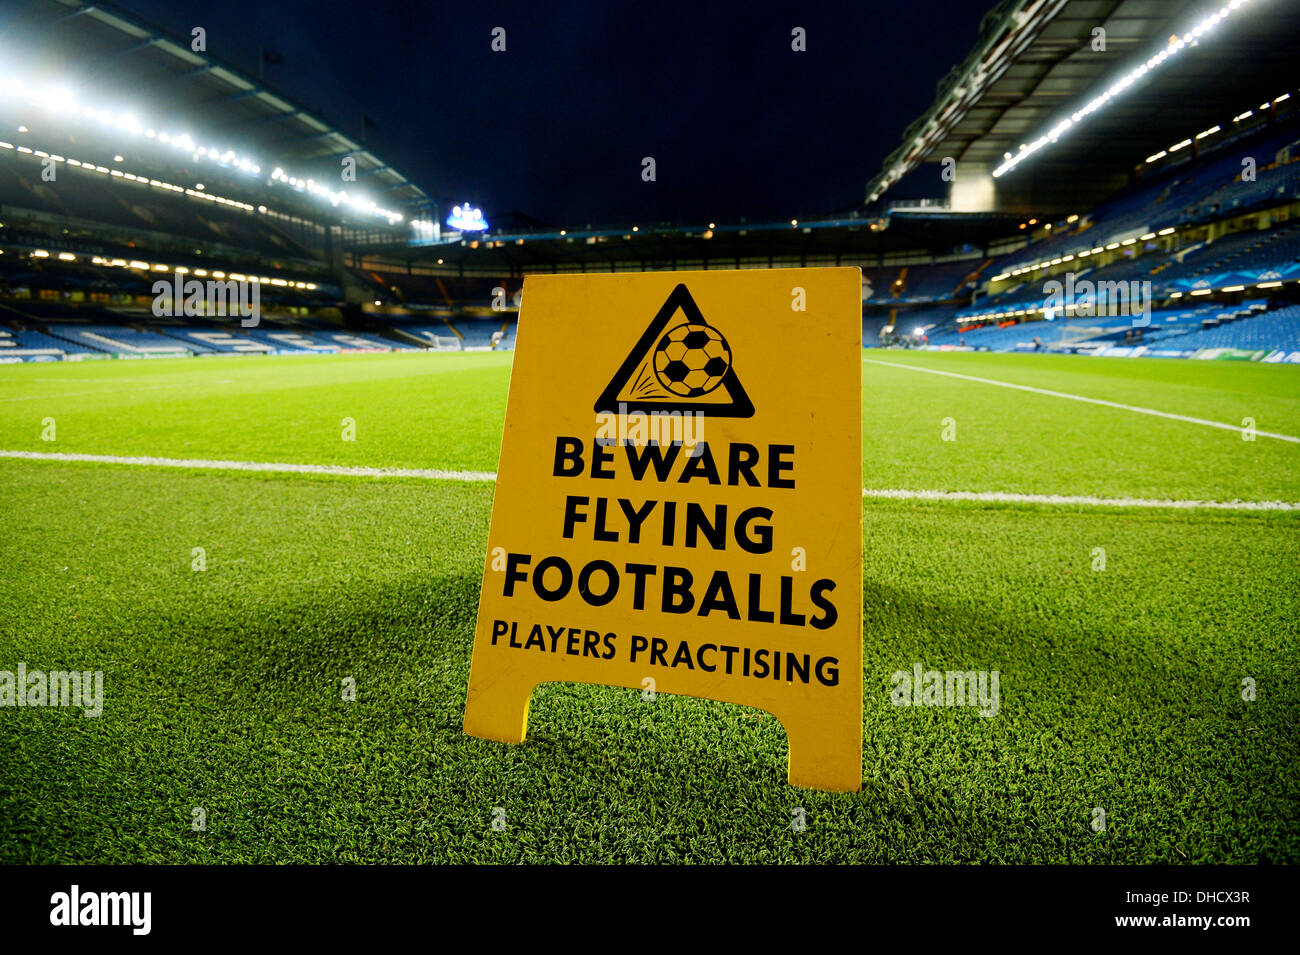 Une vue de Stamford Bridge, Chelsea Football Club d'accueil avec un panneau d'avertissement des ballons volants Banque D'Images